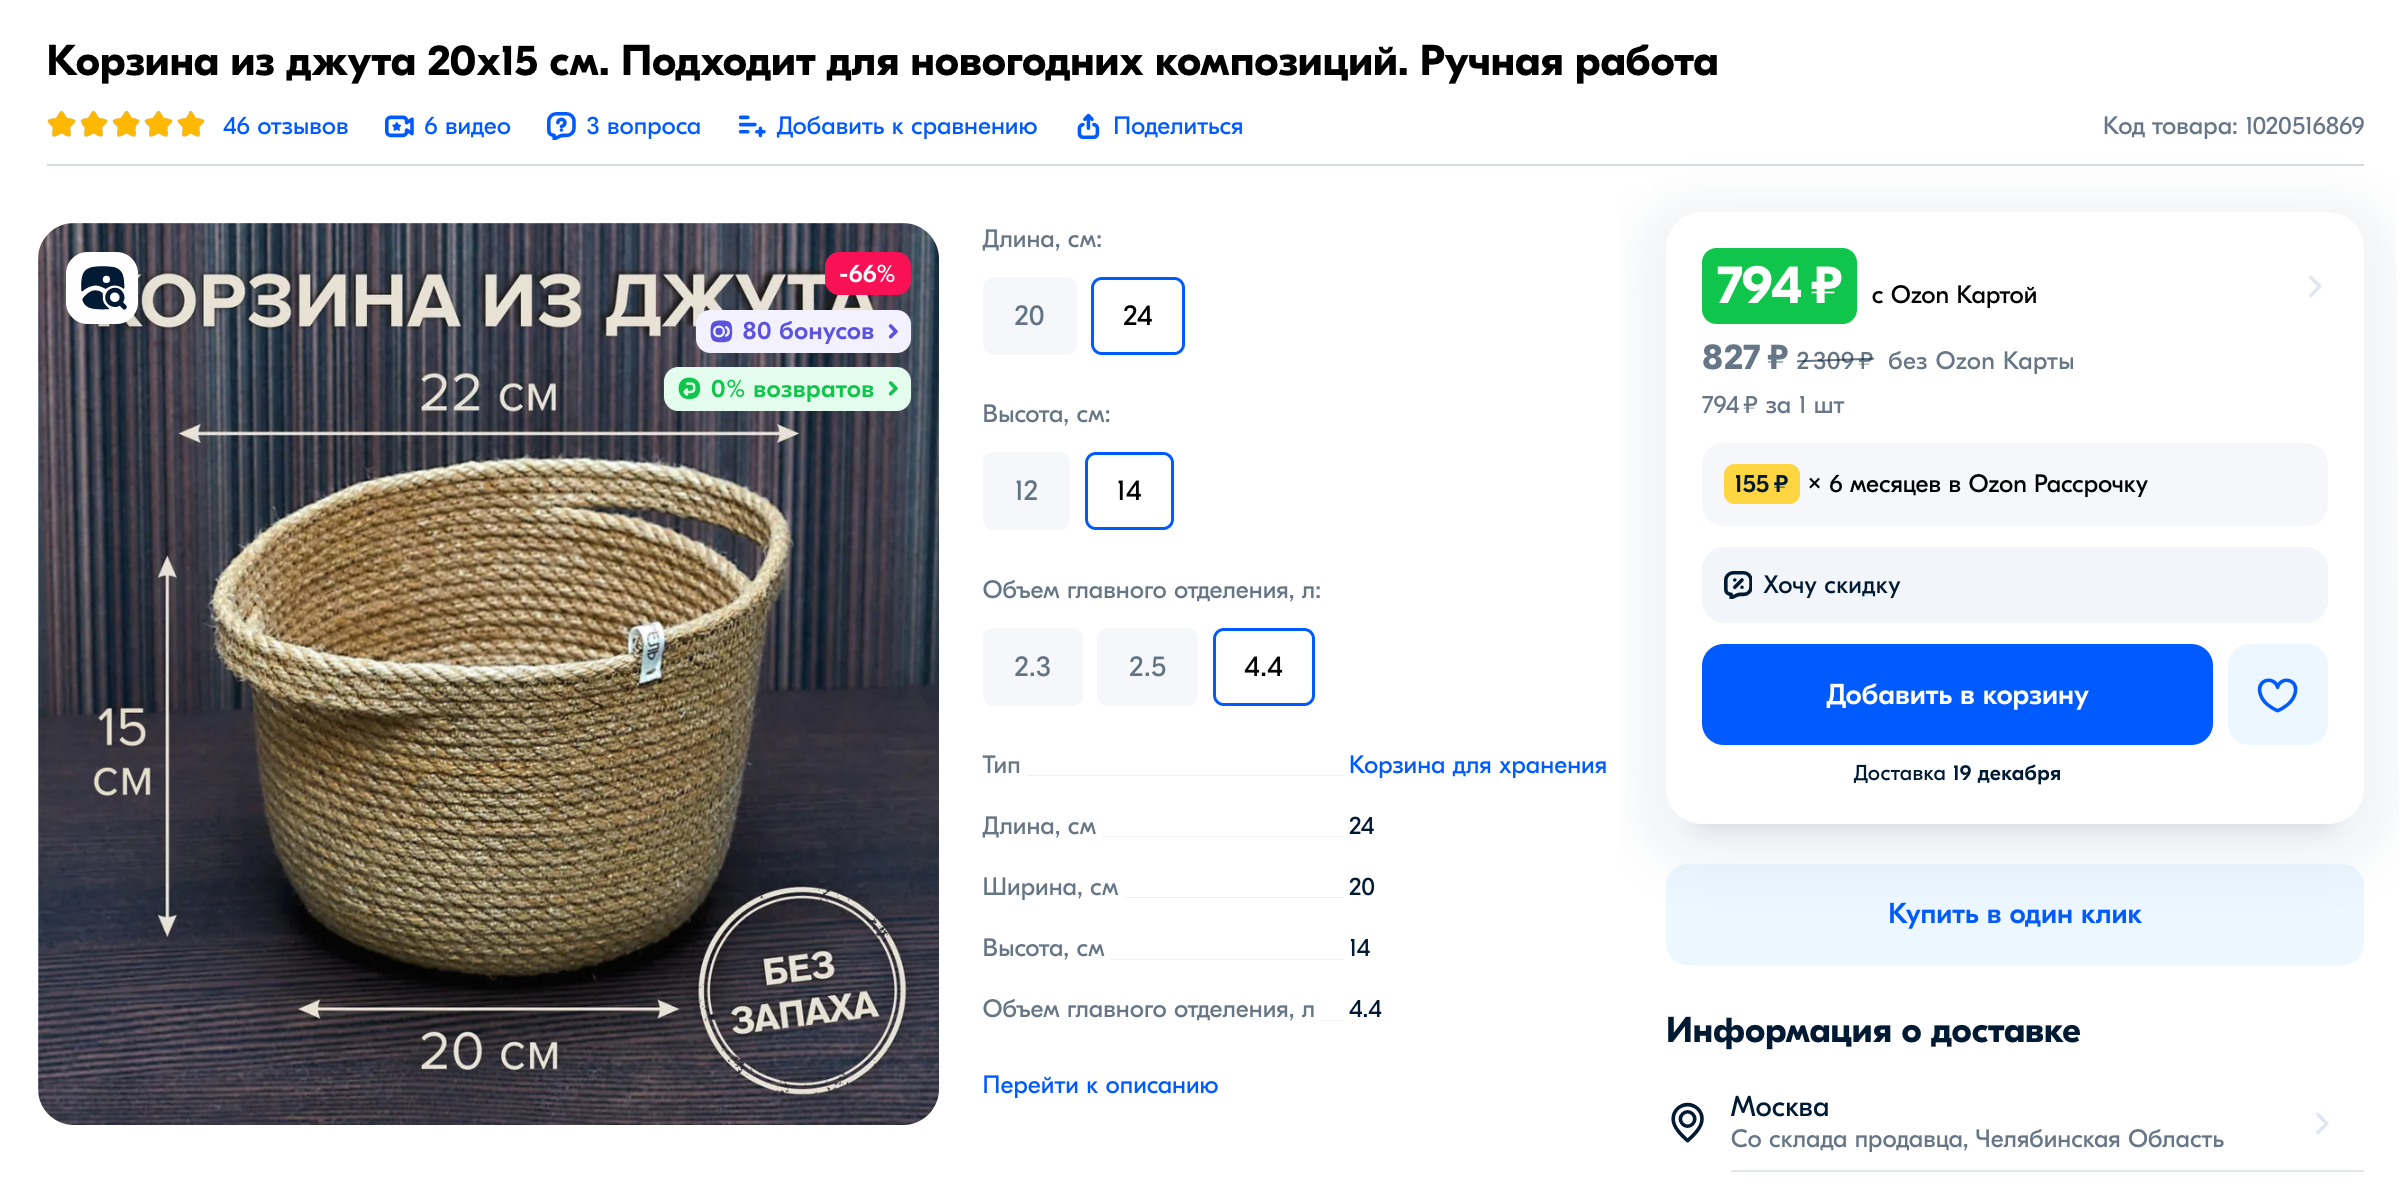 Джутовые корзины можно купить на маркетплейсах. Источник: ozon.ru